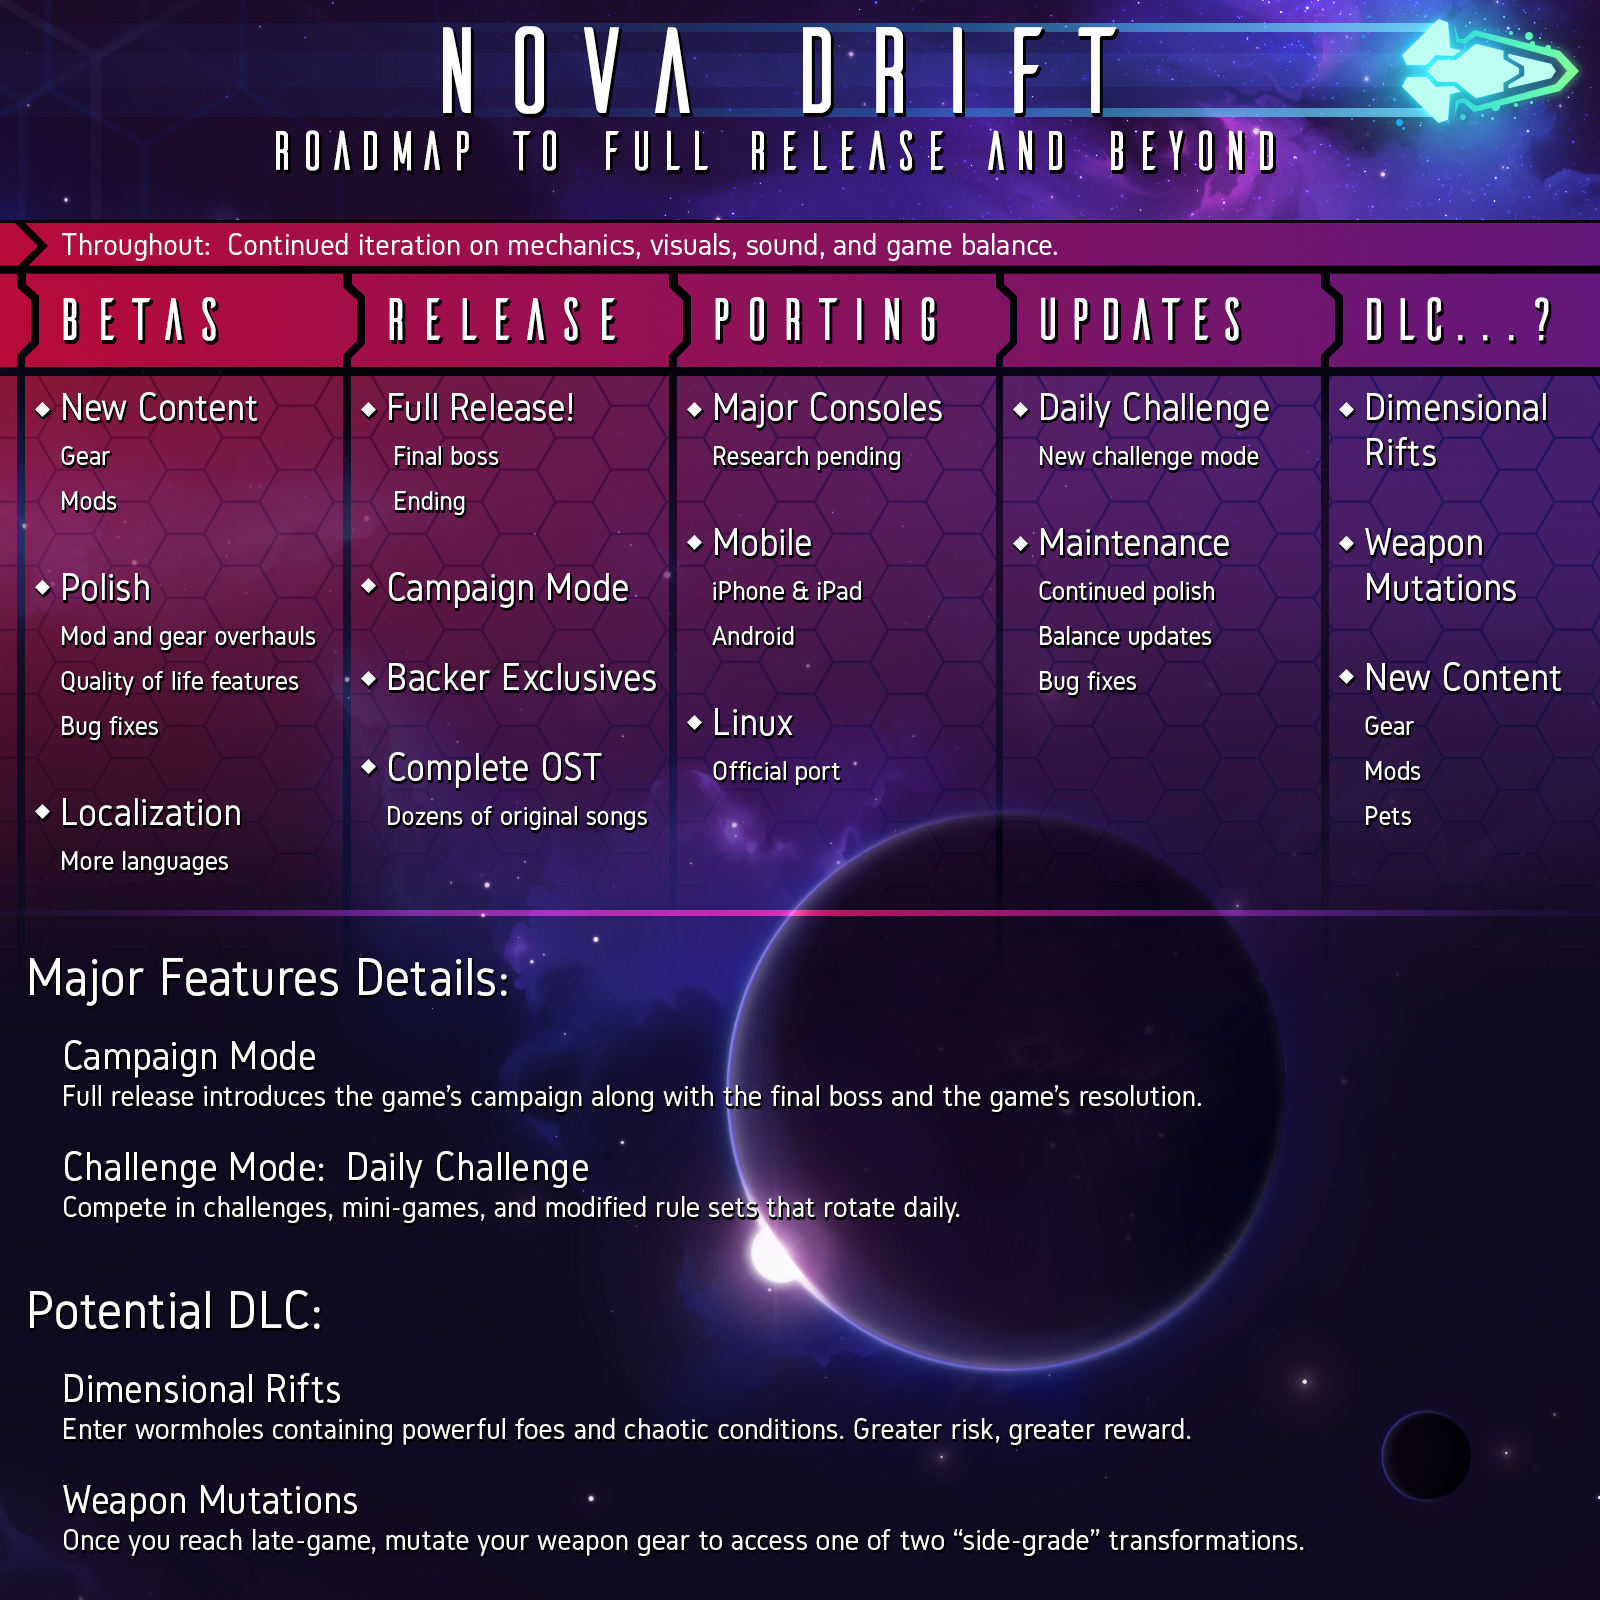 Nova Drift: Enemies 2.0, Part 3 is now live!